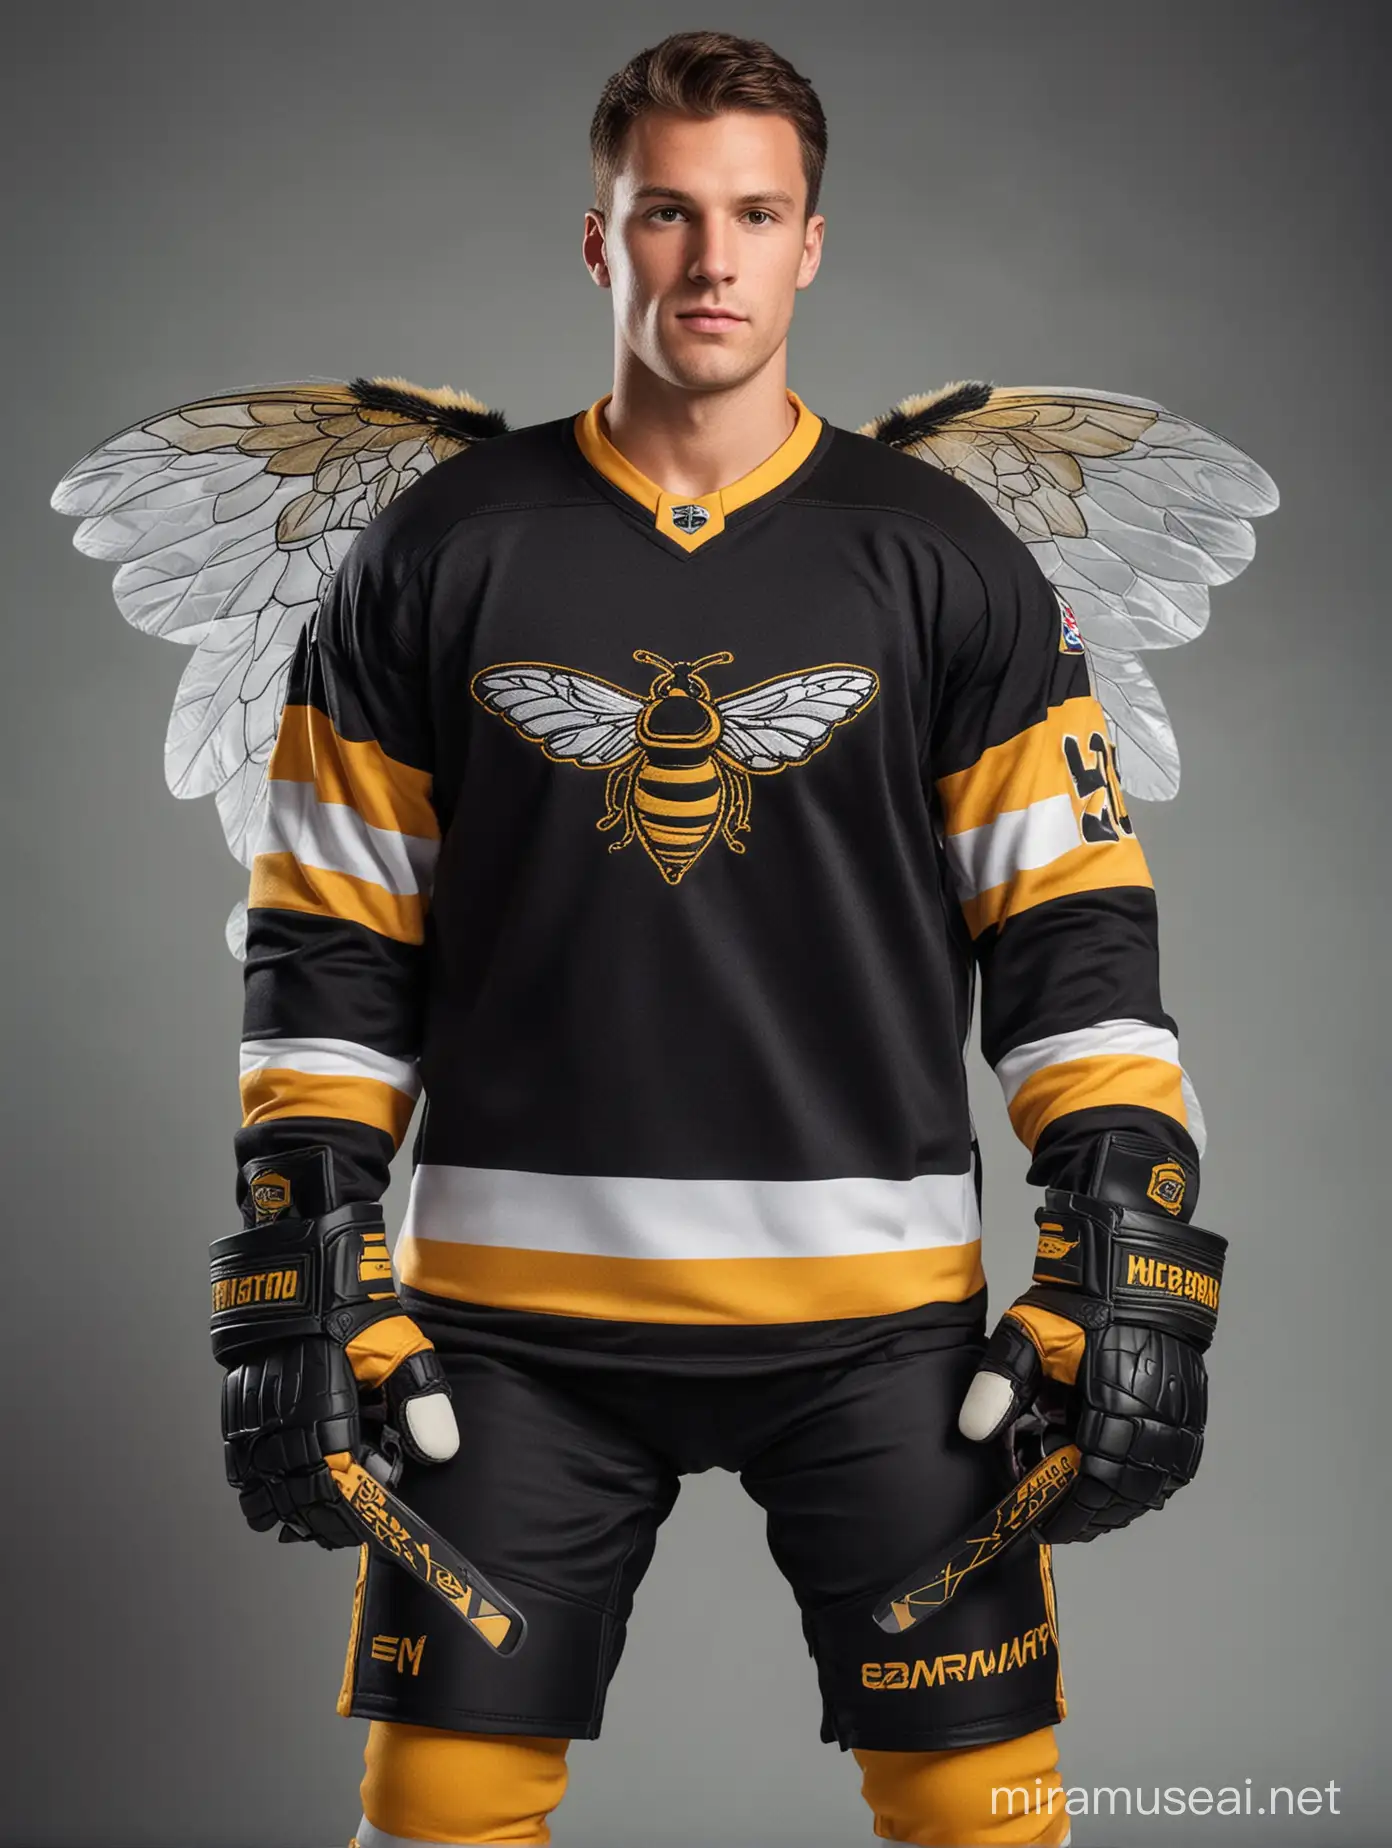 NHL Ice Hockey Player in Honeybee Costume Photoshoot